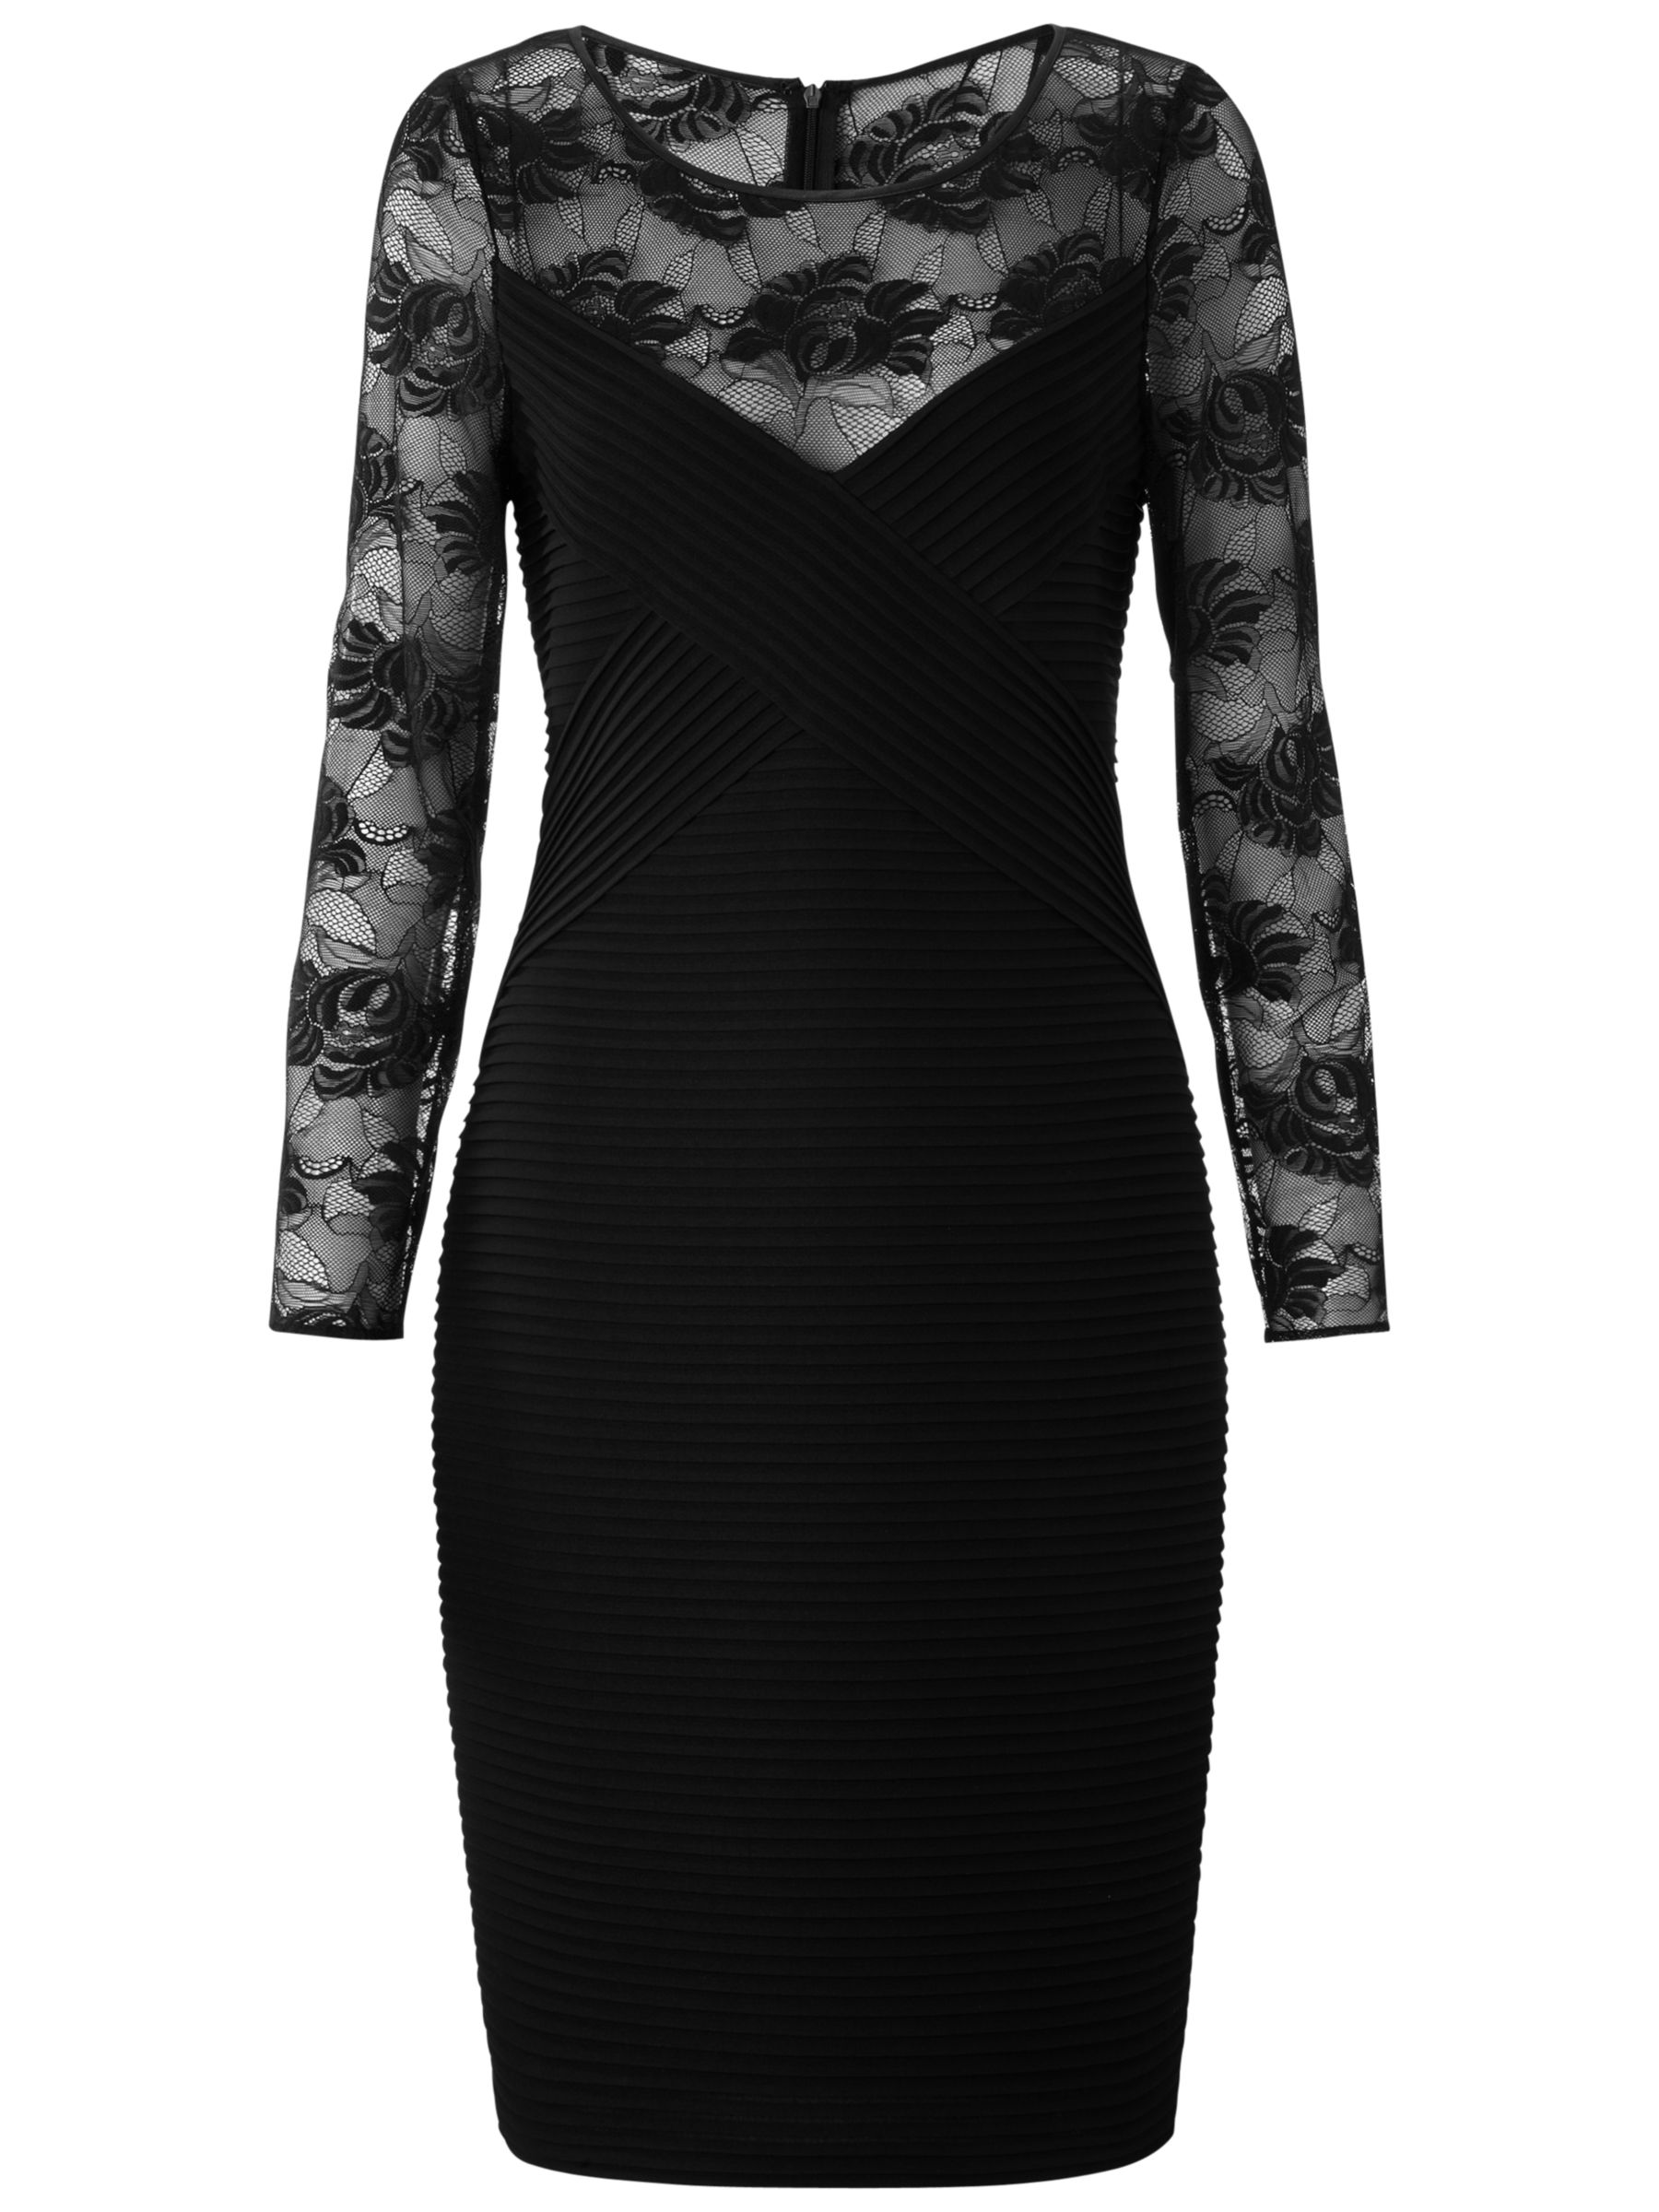 Gina Bacconi Pin Tuck Jersey Dress, Black